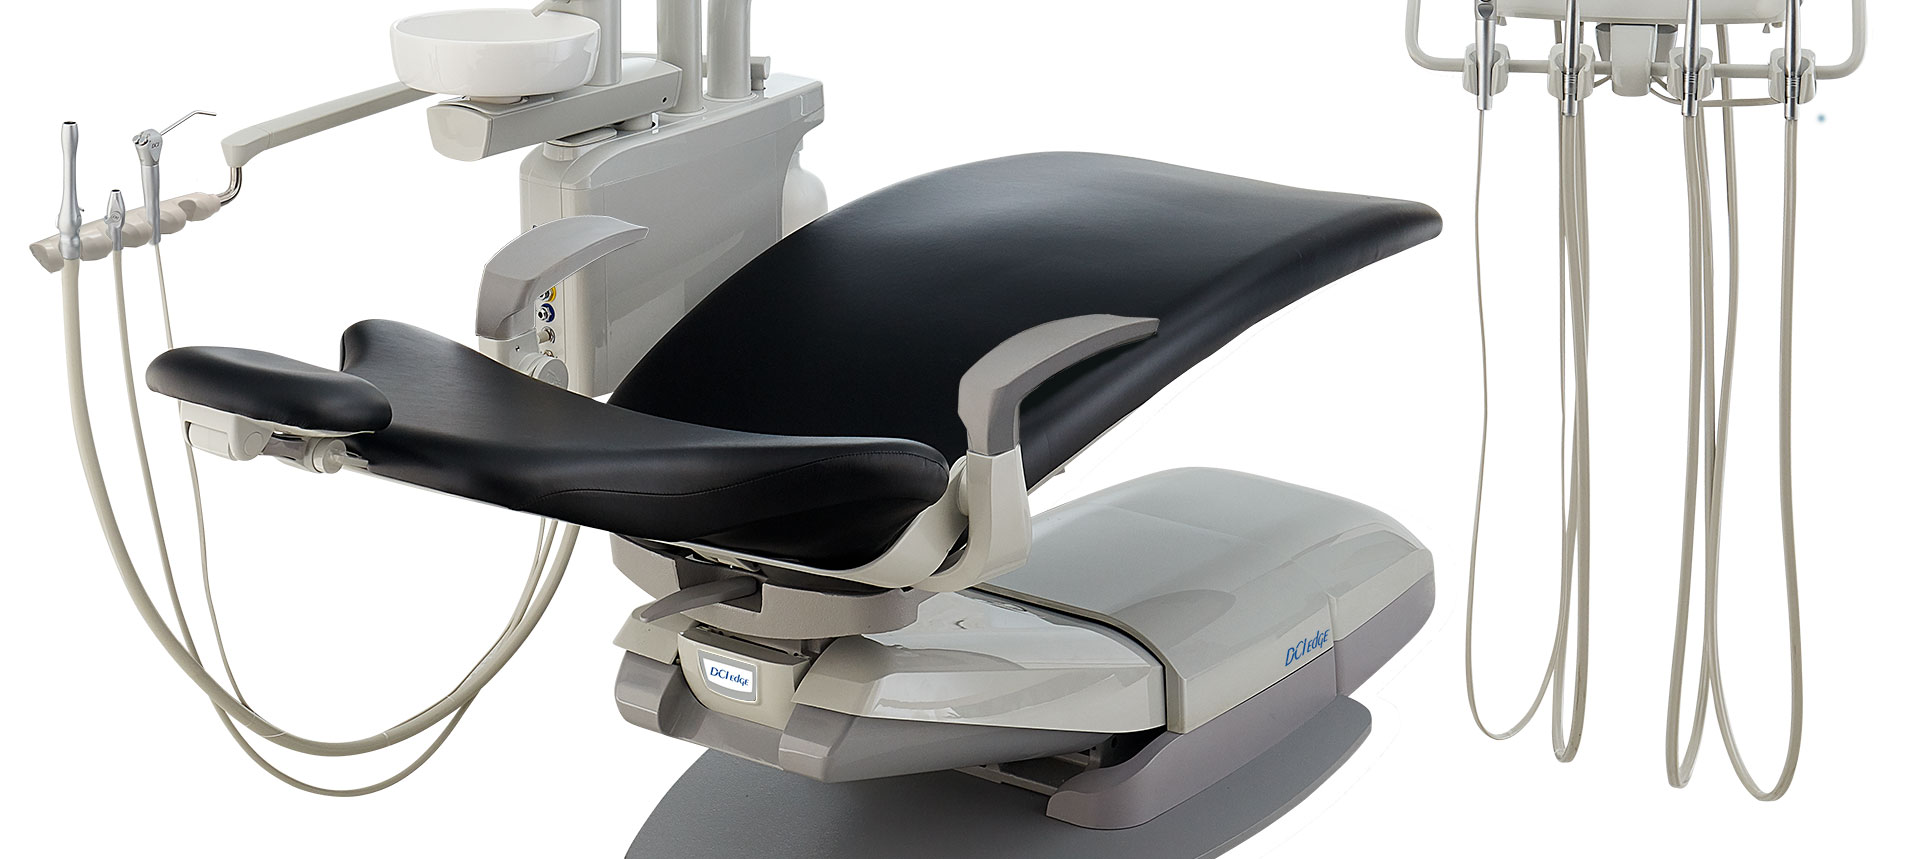 DCI Edge Series 4 Dental Chair